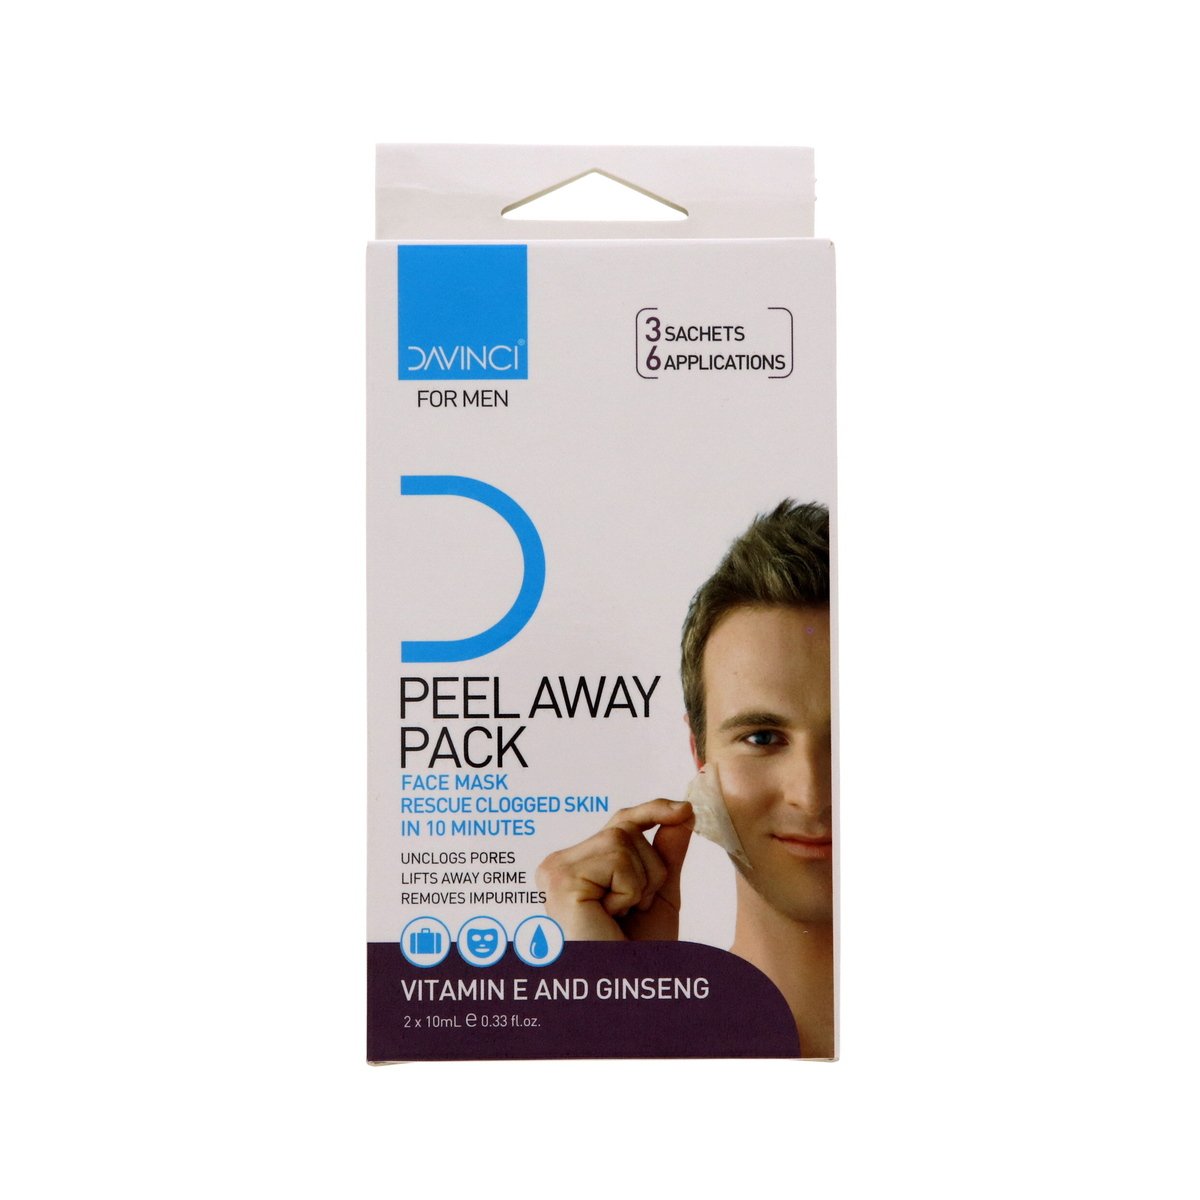 Davinci Peel Away Pack Face Mask 3 pcs